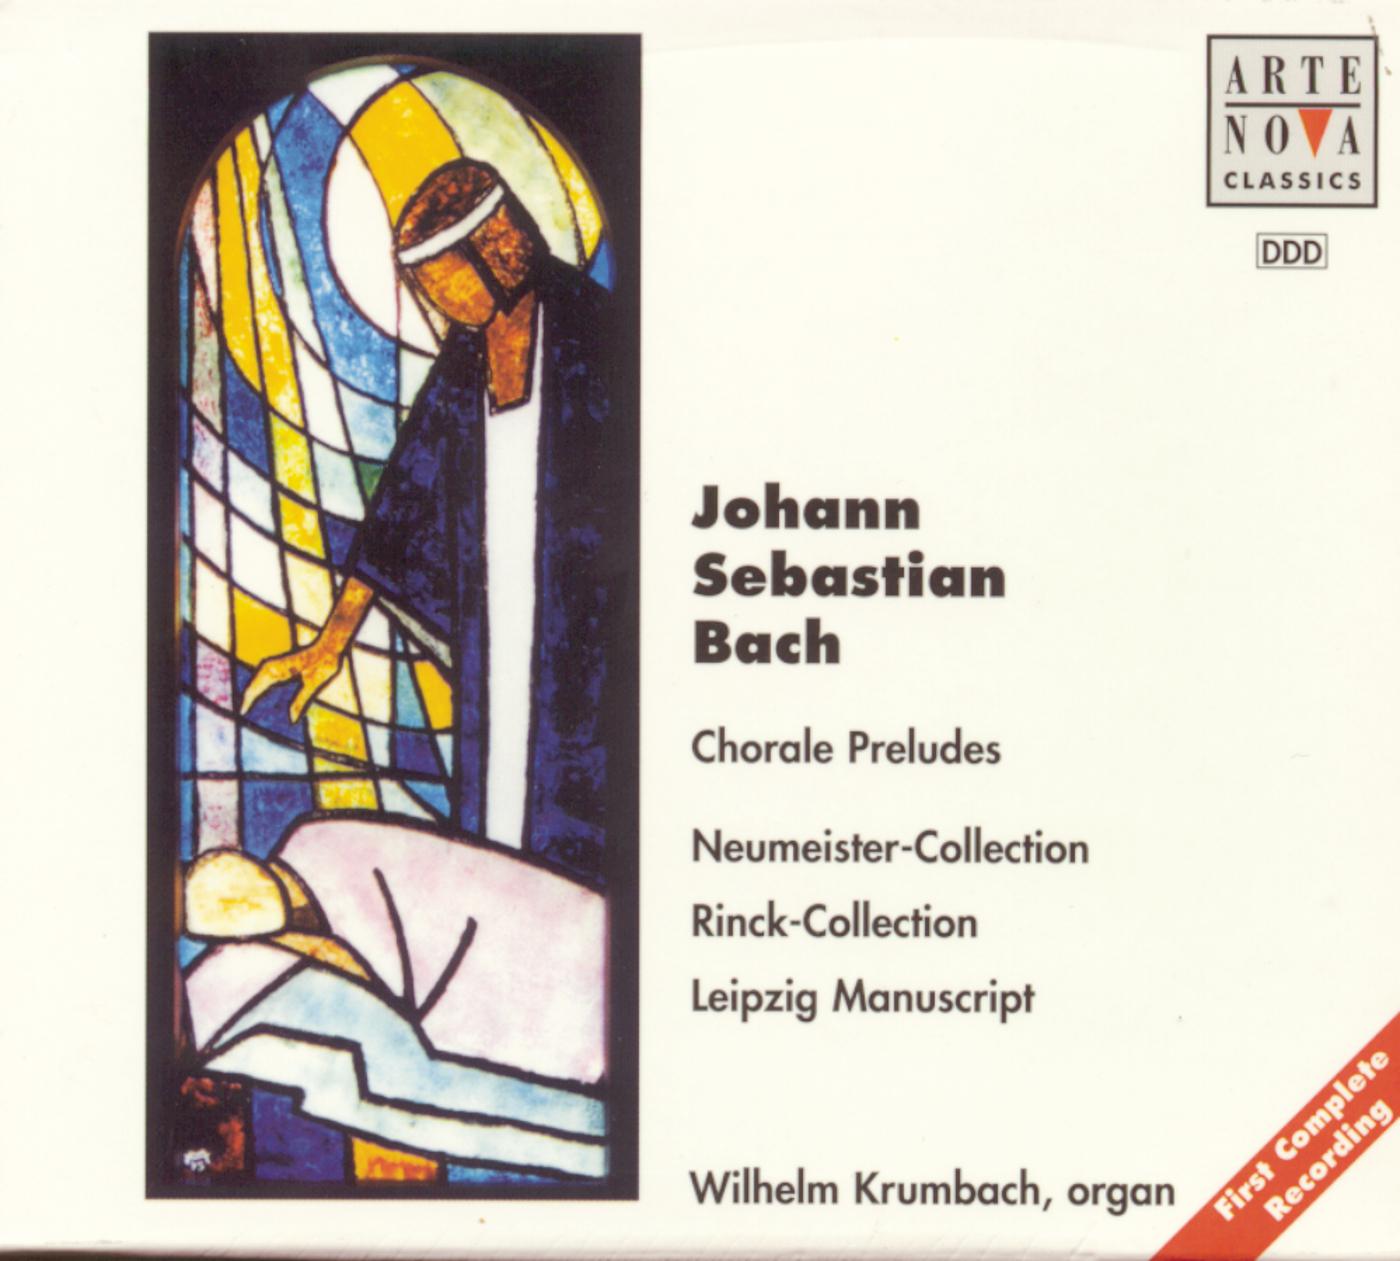 Wilhelm Krumbach - Arnstadter Orgelbuch:O Jesu, wie ist dein Gestalt, BWV 1094